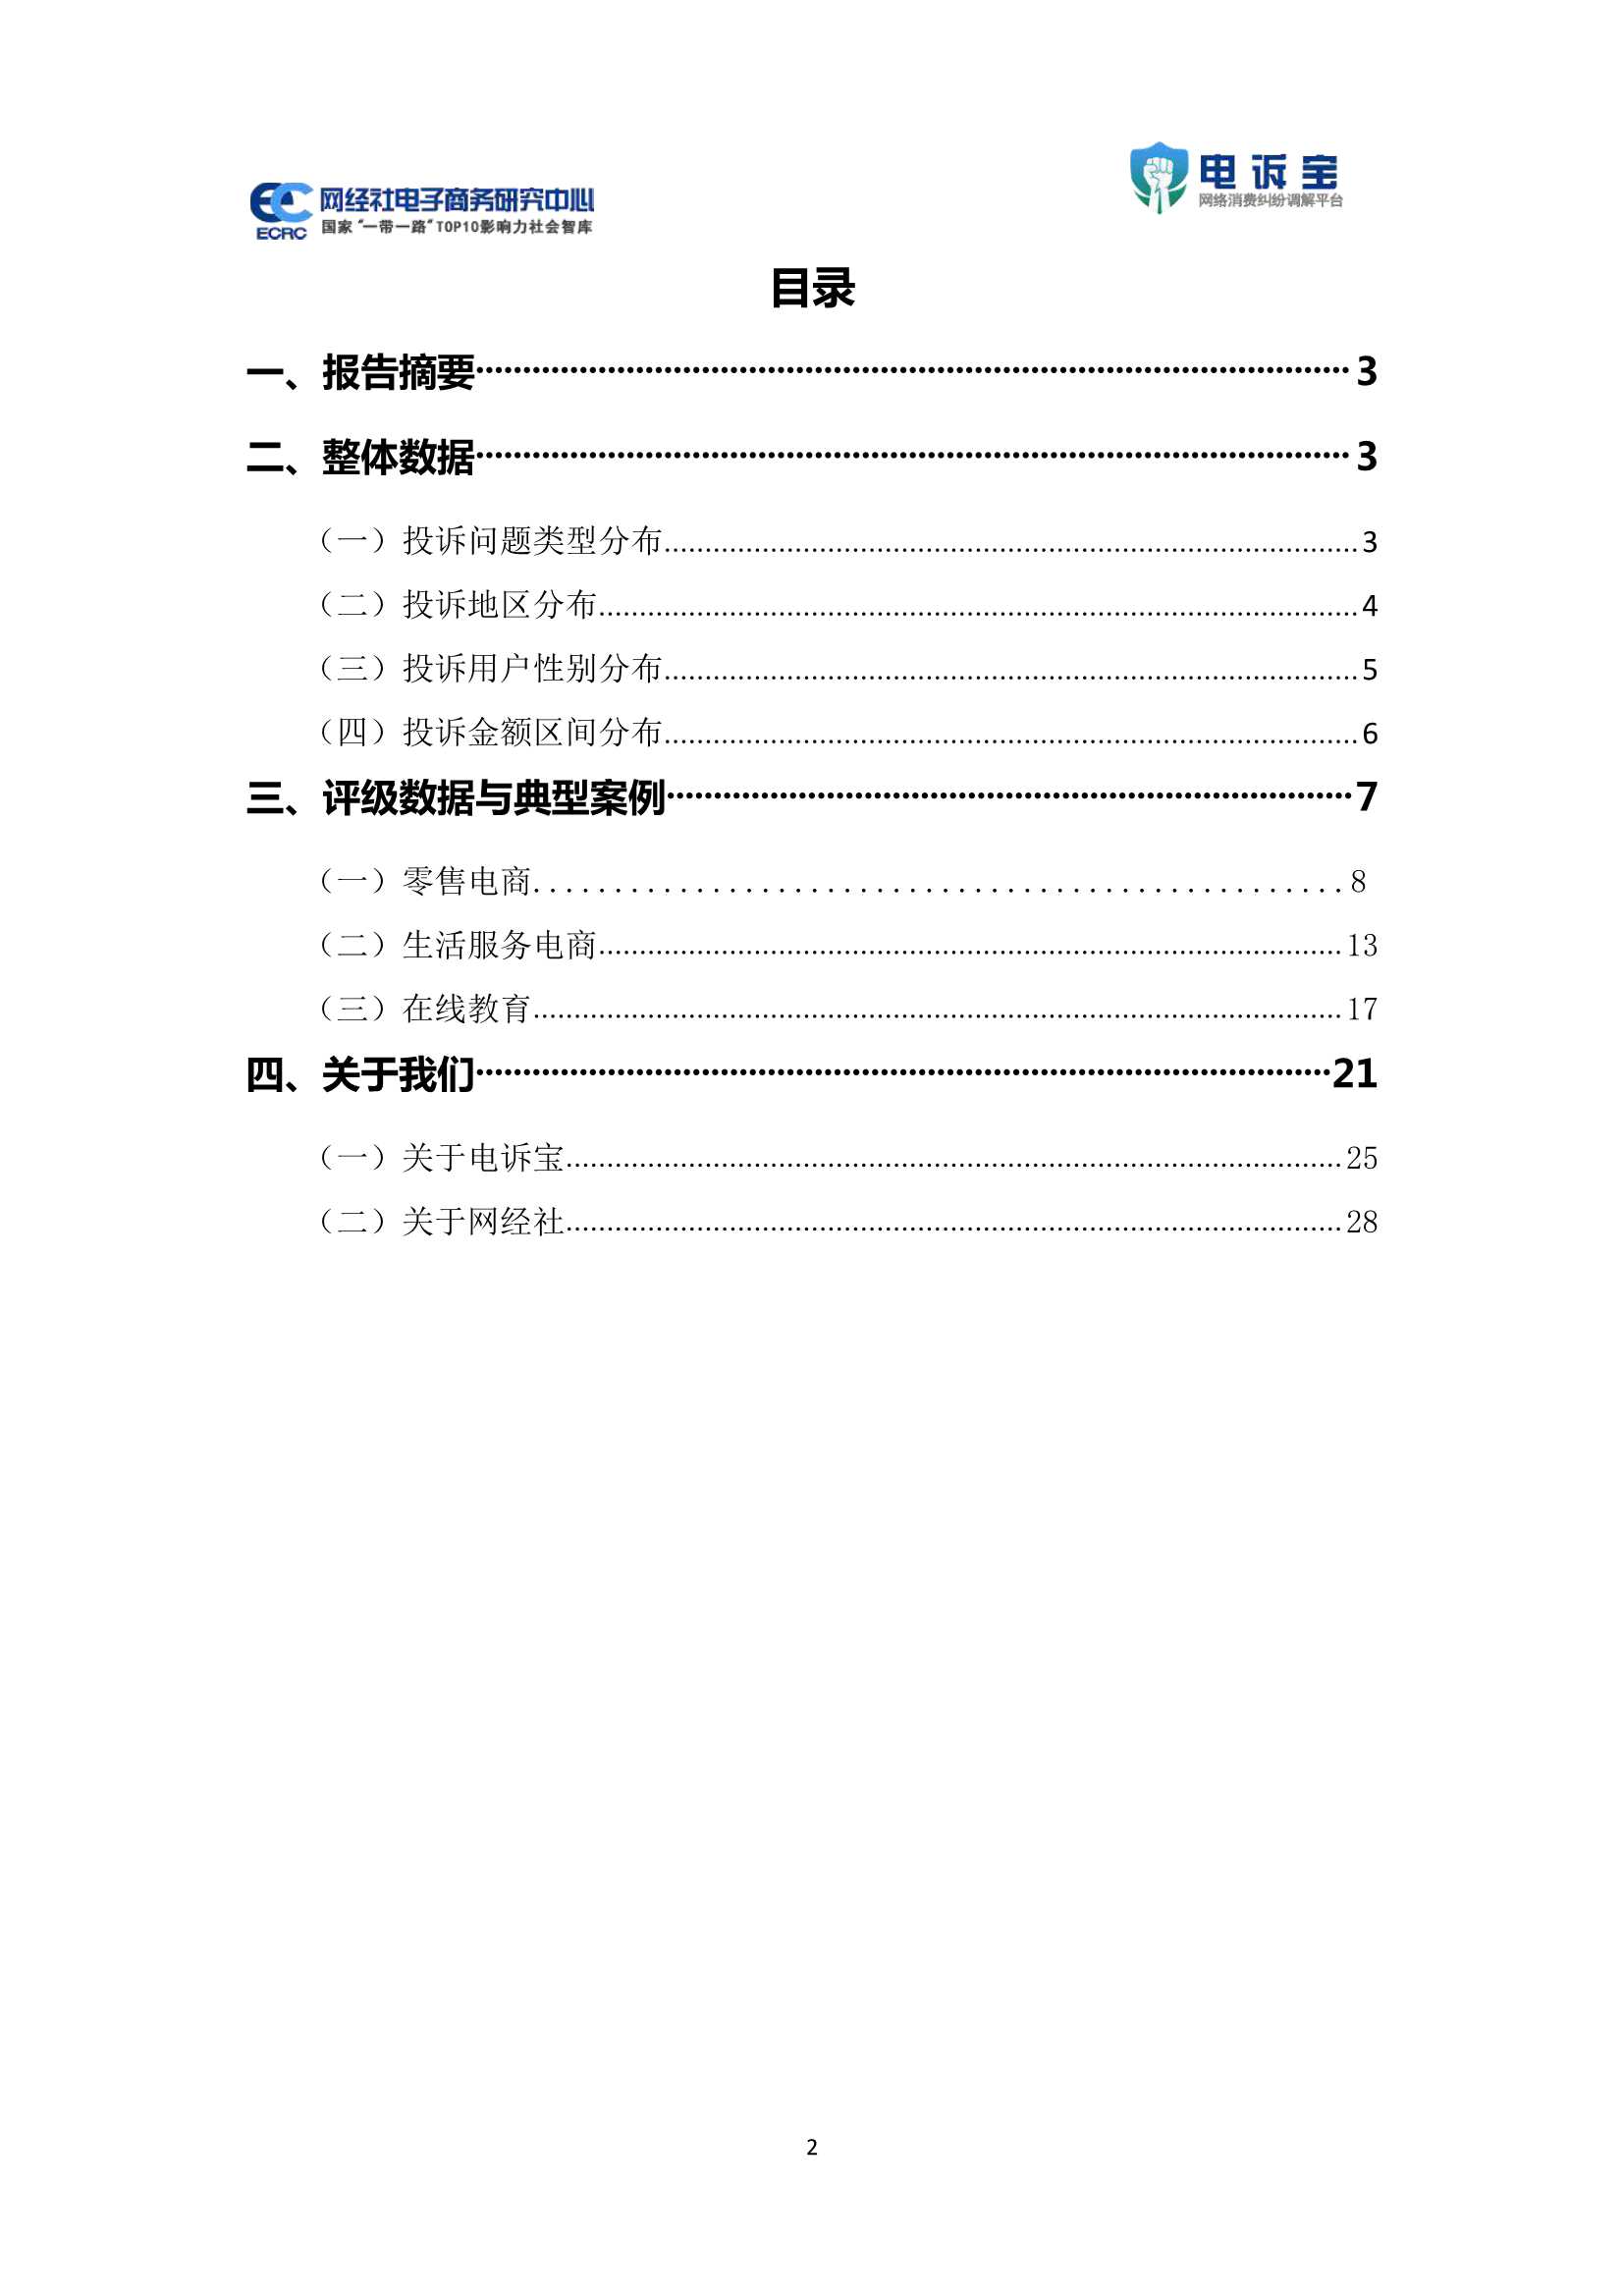 2021年双11期间中国电子商务用户体验与投诉数据报告-2021.12-32页